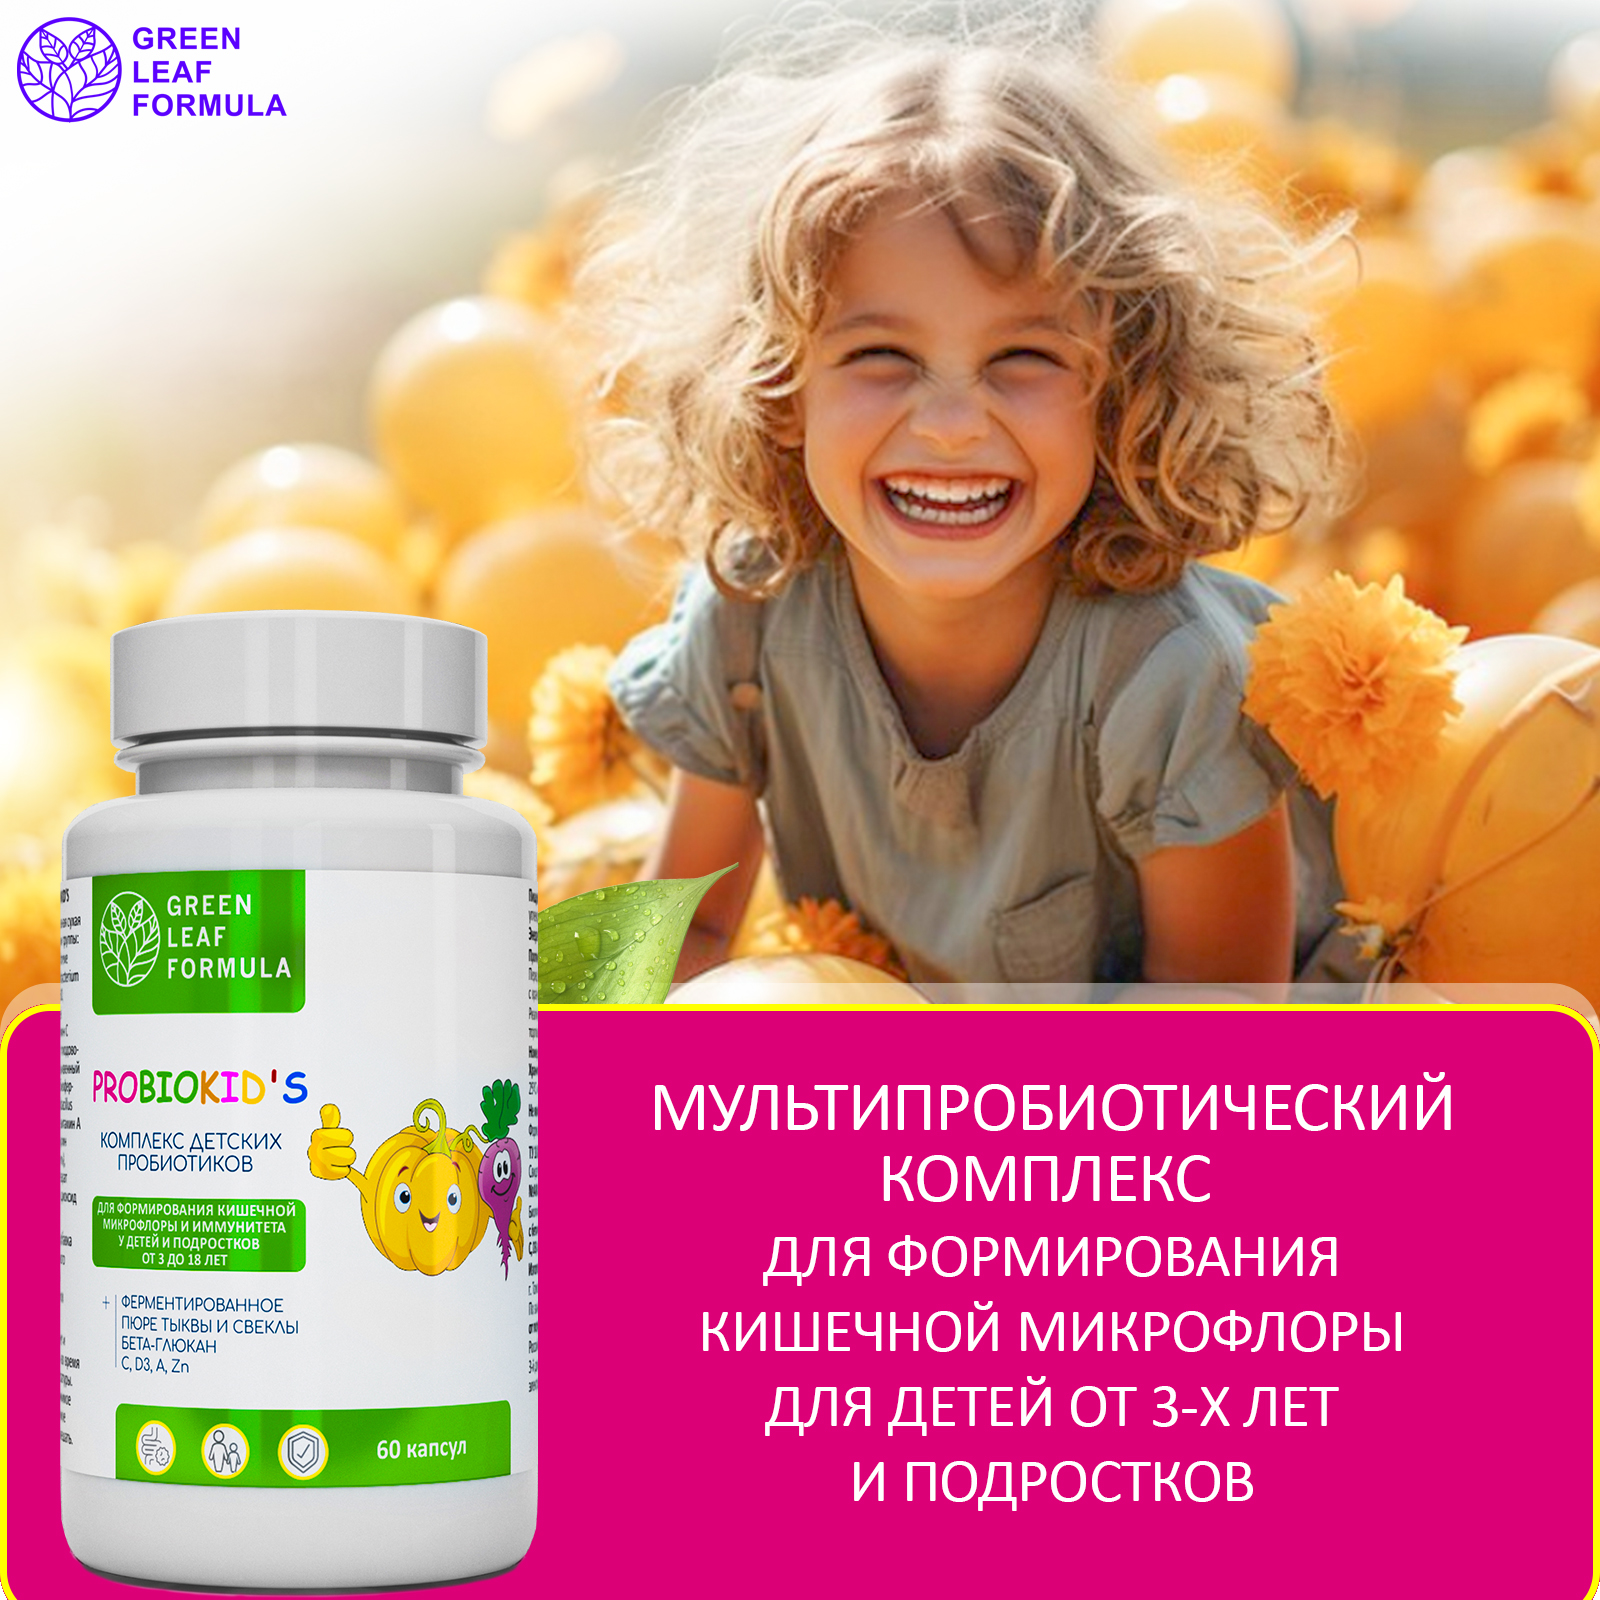 Детский пробиотик и витамины Green Leaf Formula мультивитамины для детей от 3 лет для иммунитета для кишечника - фото 6